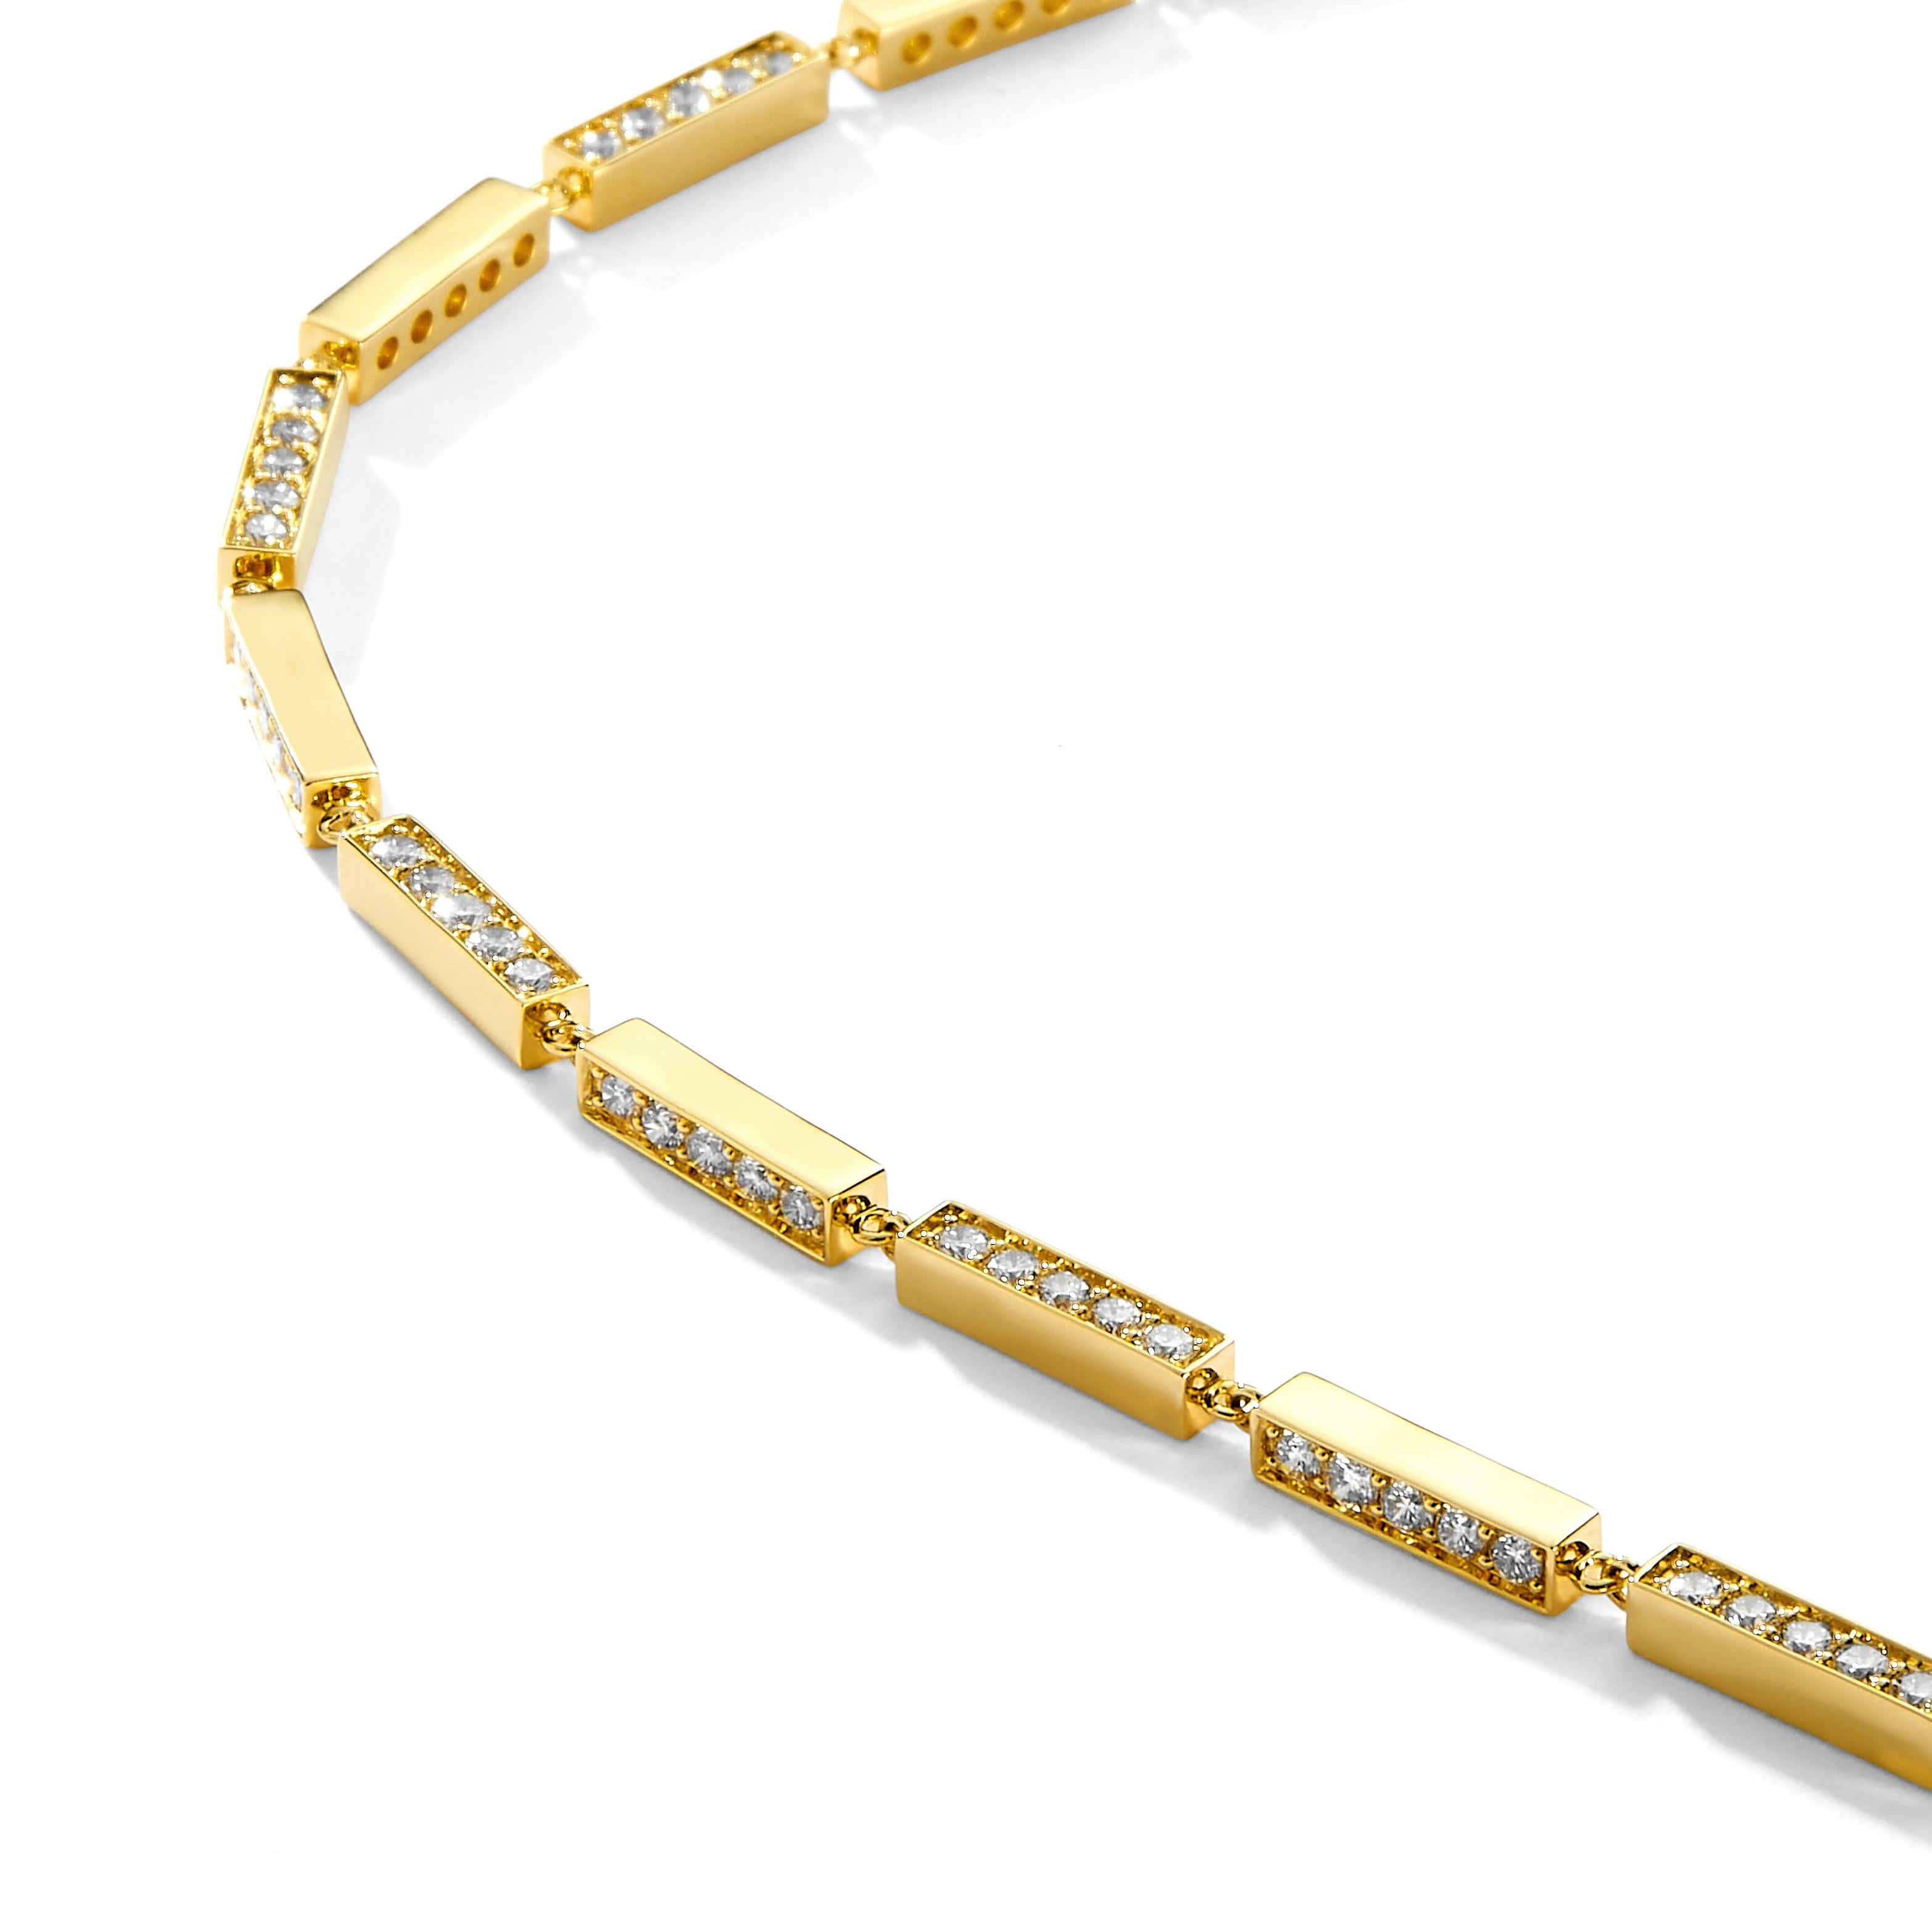 Créé en or jaune 18 carats
Diamants 2.30 carats environ.
Longueur de 8 pouces avec fermoir en forme de homard
Le bracelet peut être fermé à n'importe quelle longueur
Également disponible en différentes longueurs

Réalisé en or jaune 18 carats, ce